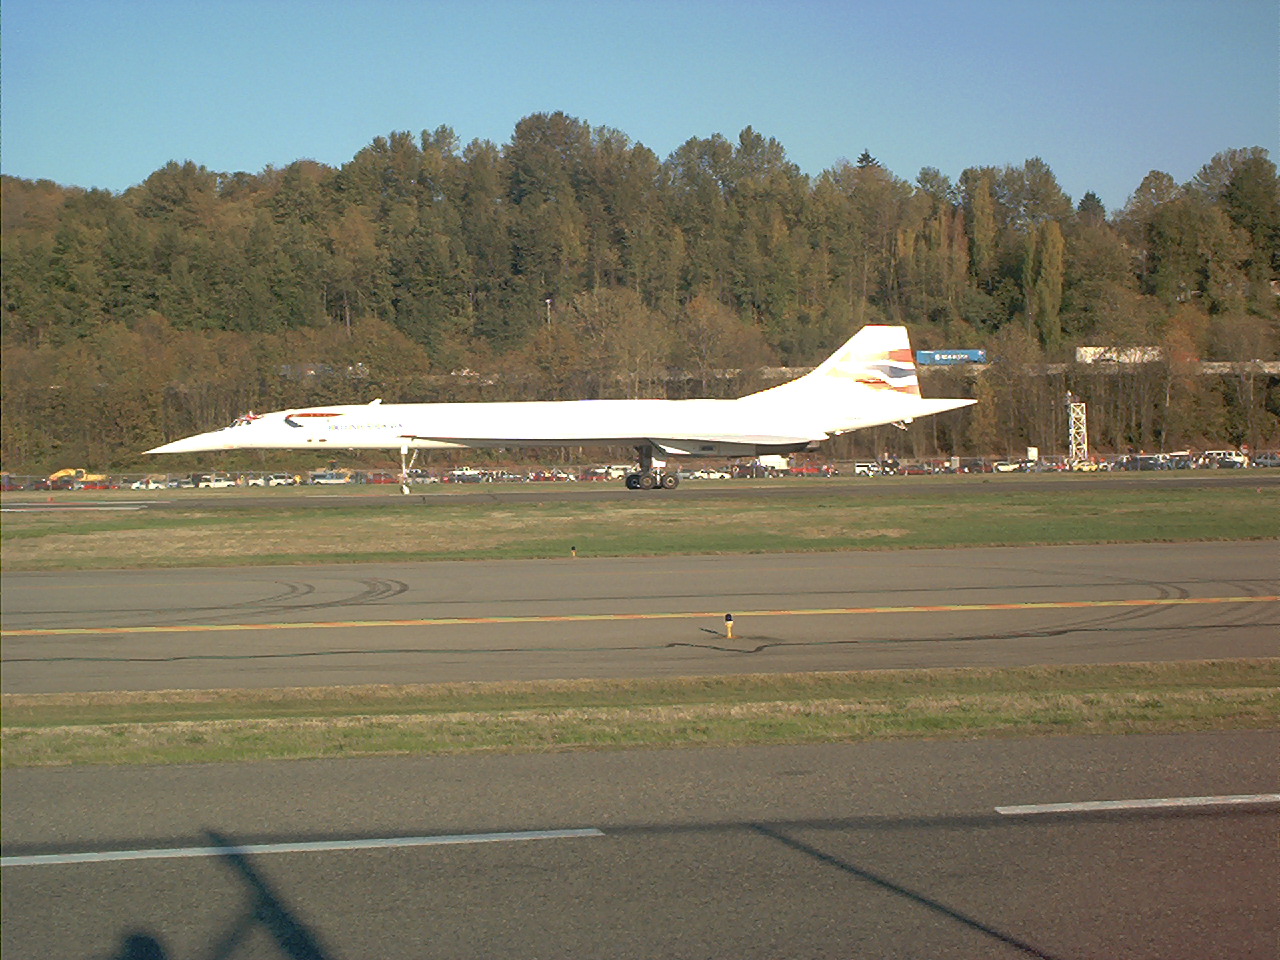 Concorde landing at Boeing Field